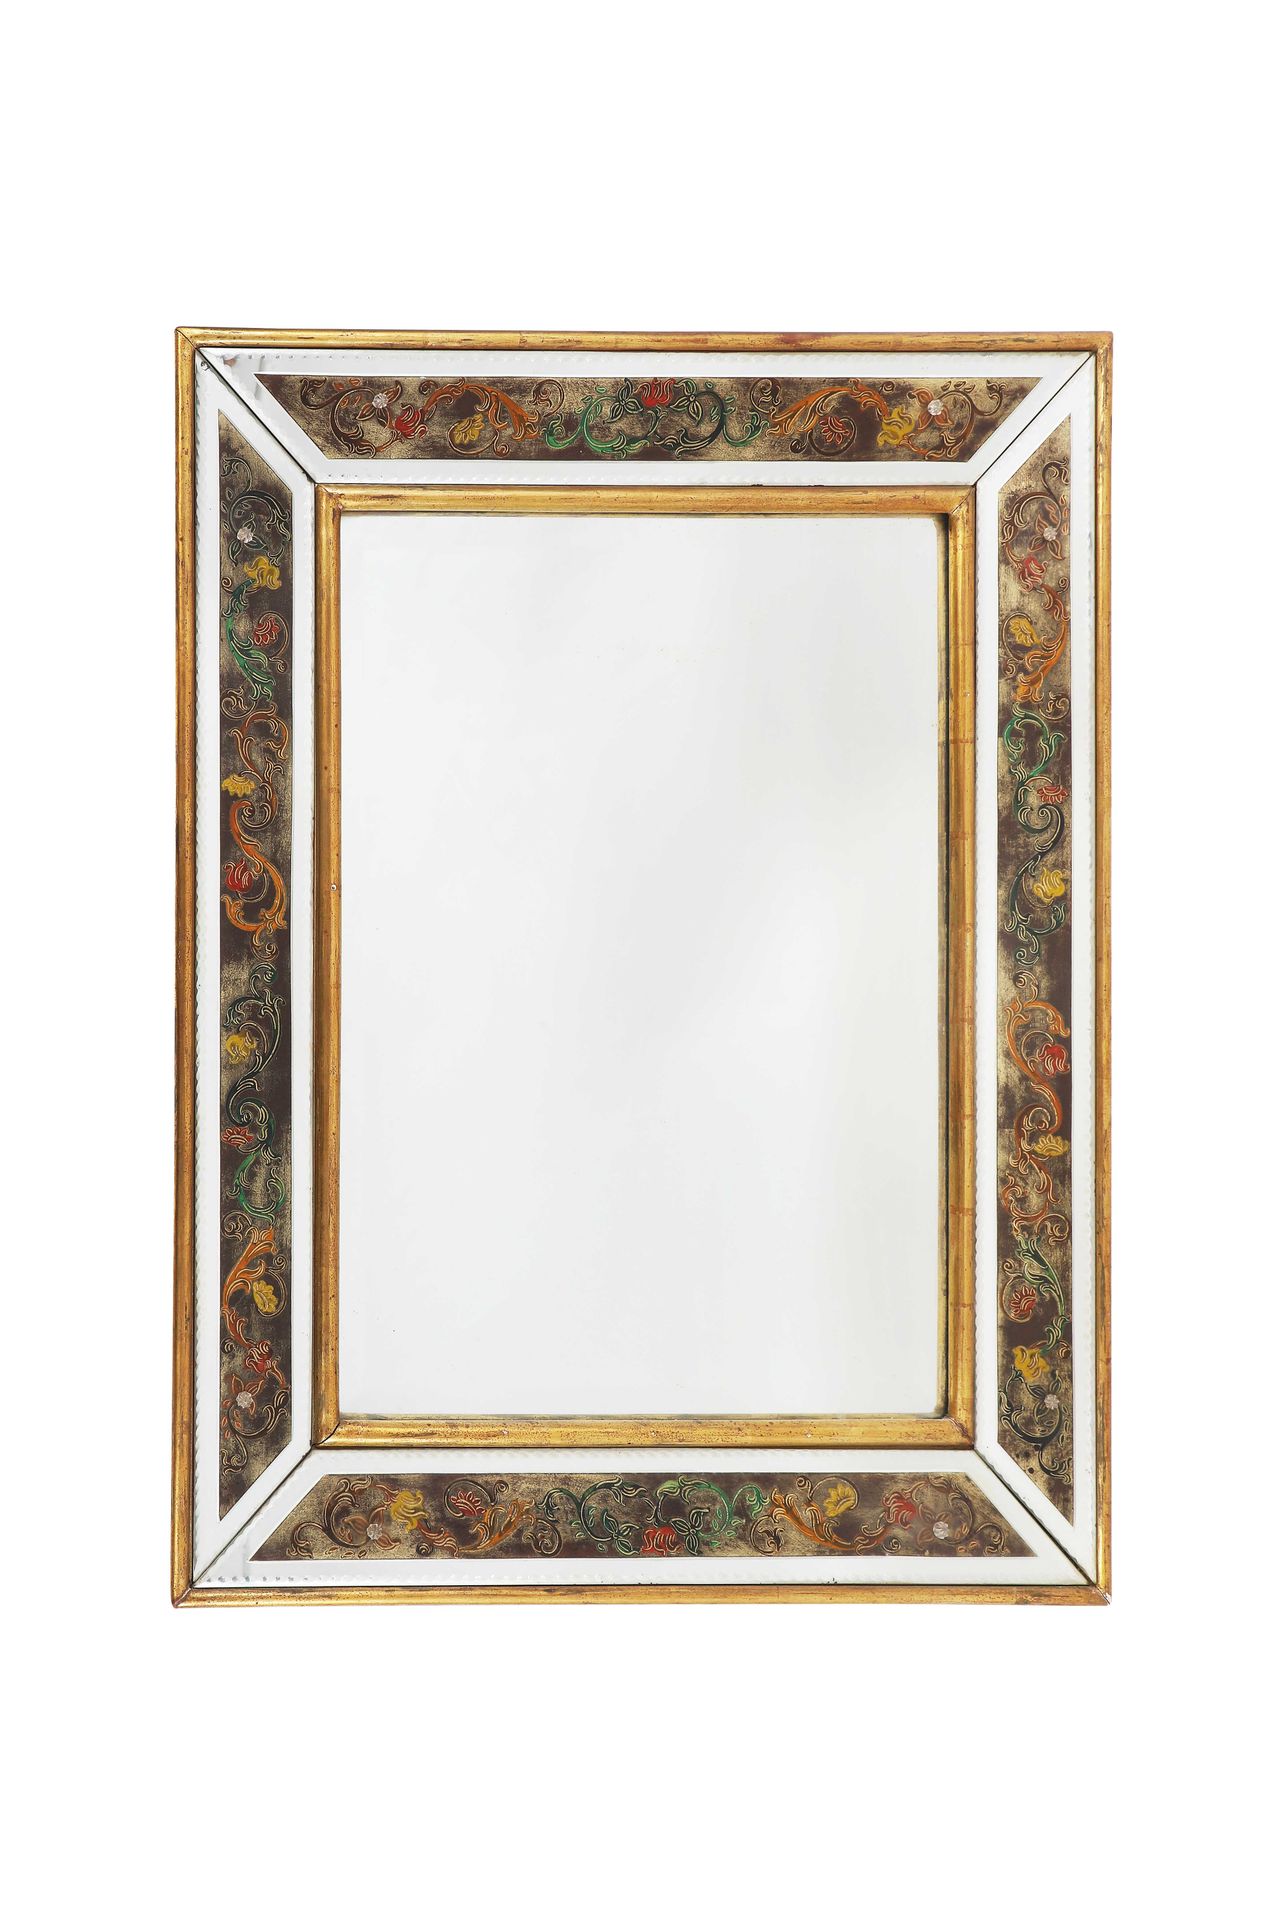 Null Uno specchio veneziano in vetro di Murano con fregi floreali policromi.

Da&hellip;